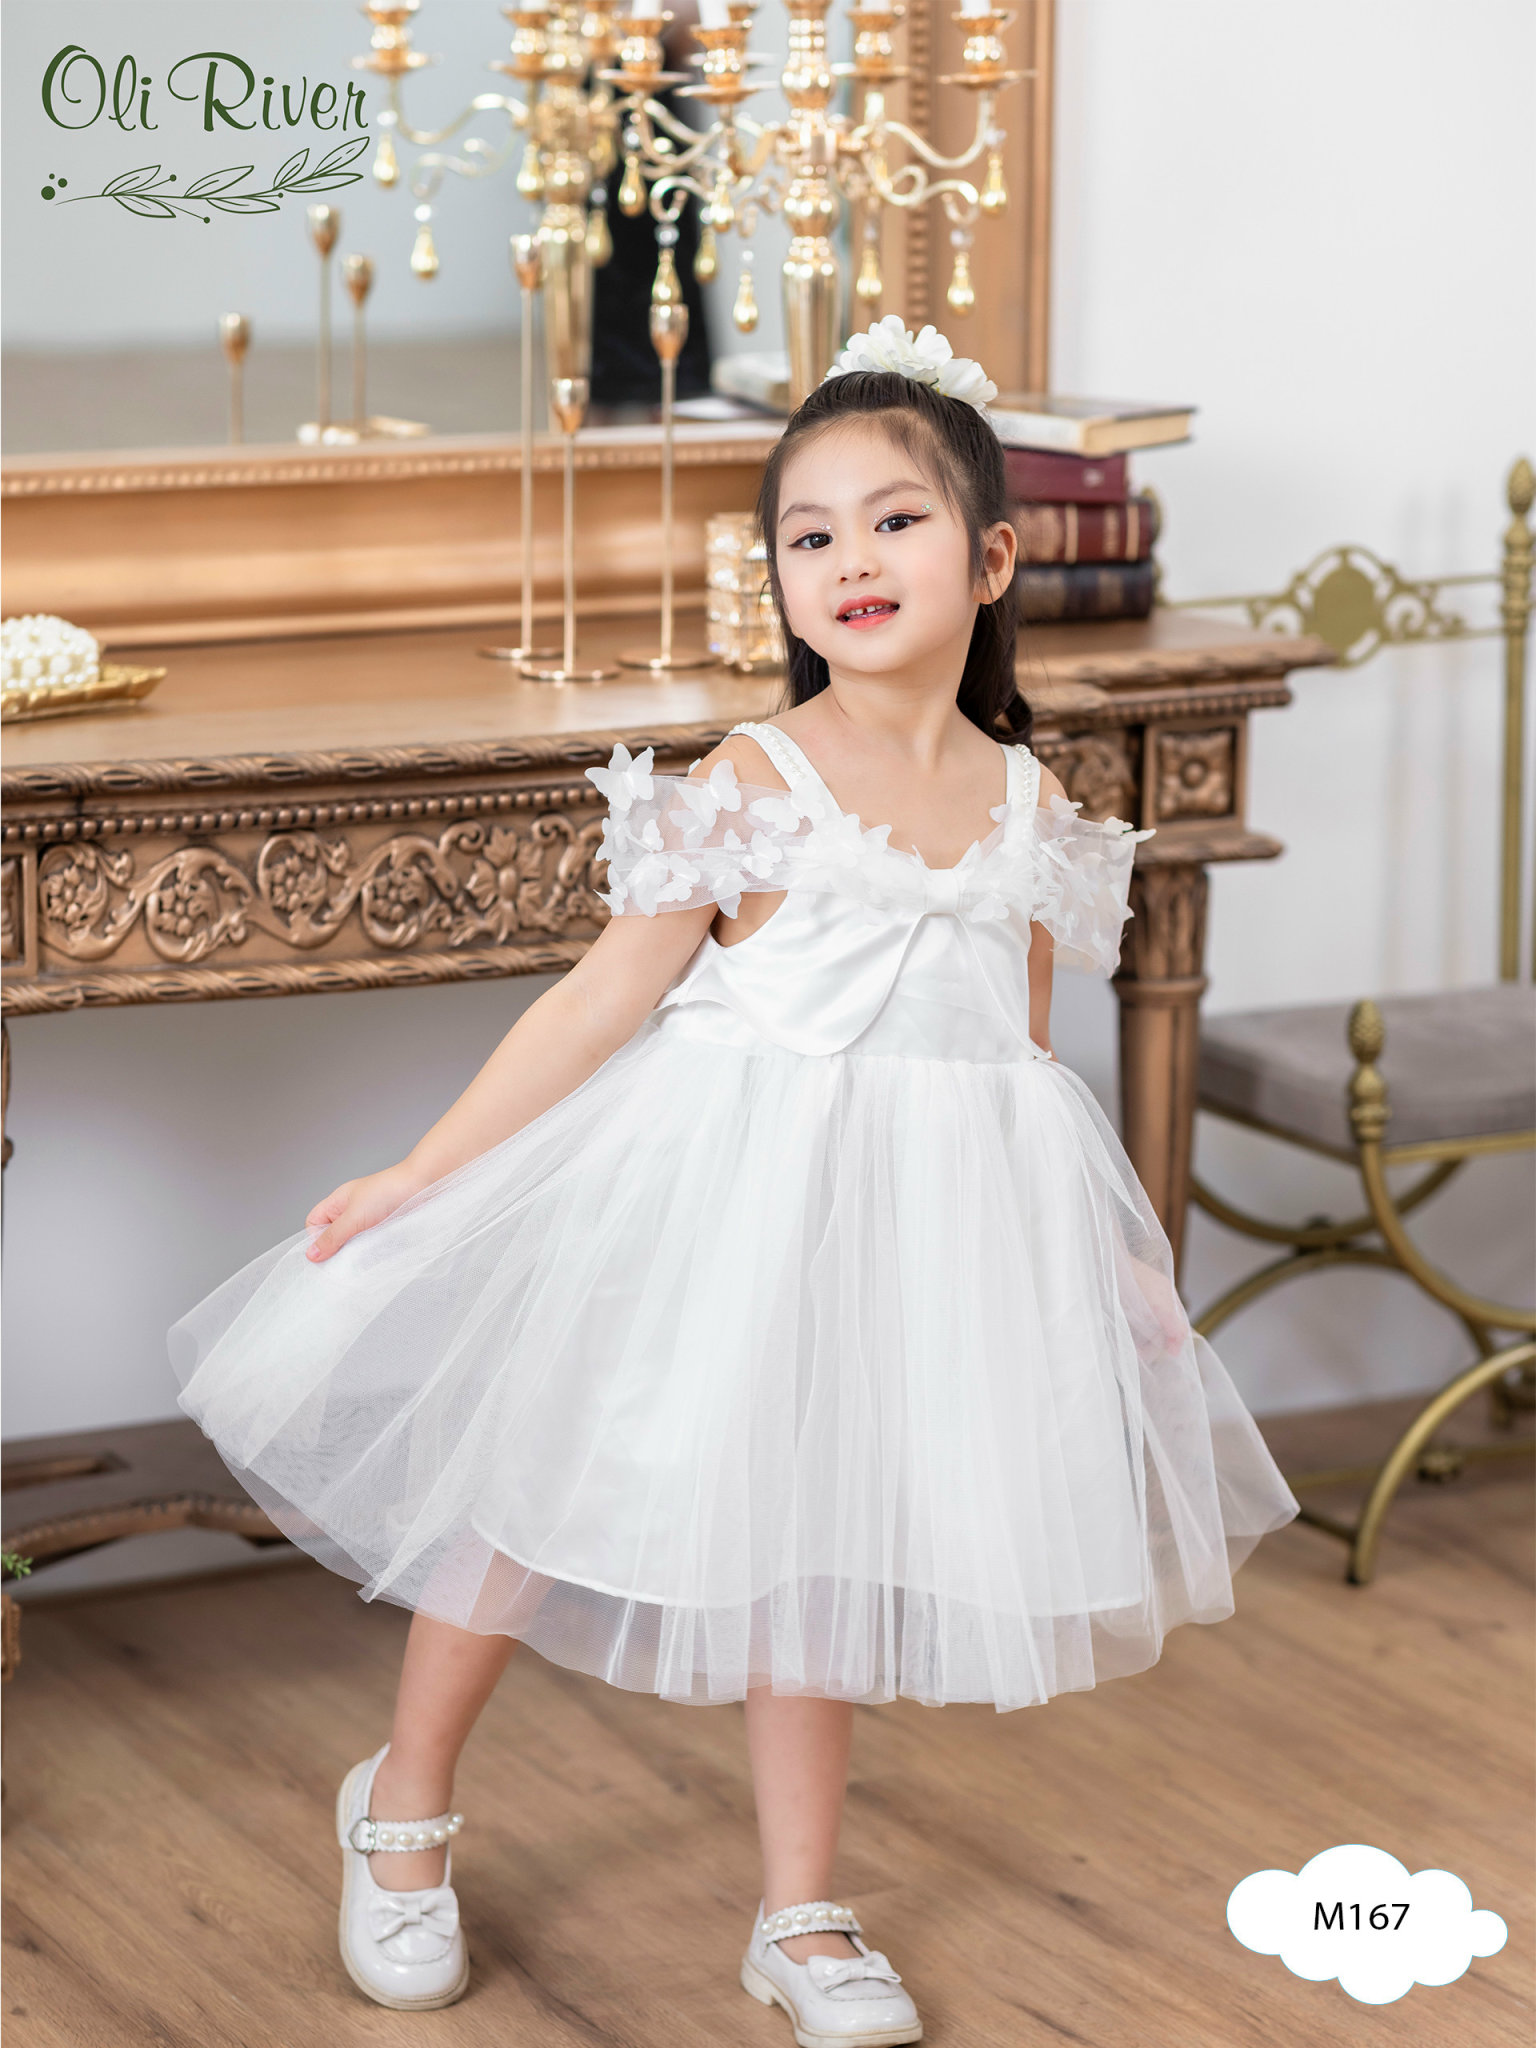 Đầm voan công chúa cho bé gái màu trắng dự tiệc múa hóa trang đẹp size 12-35kg hàng Thiết kế cao cấp